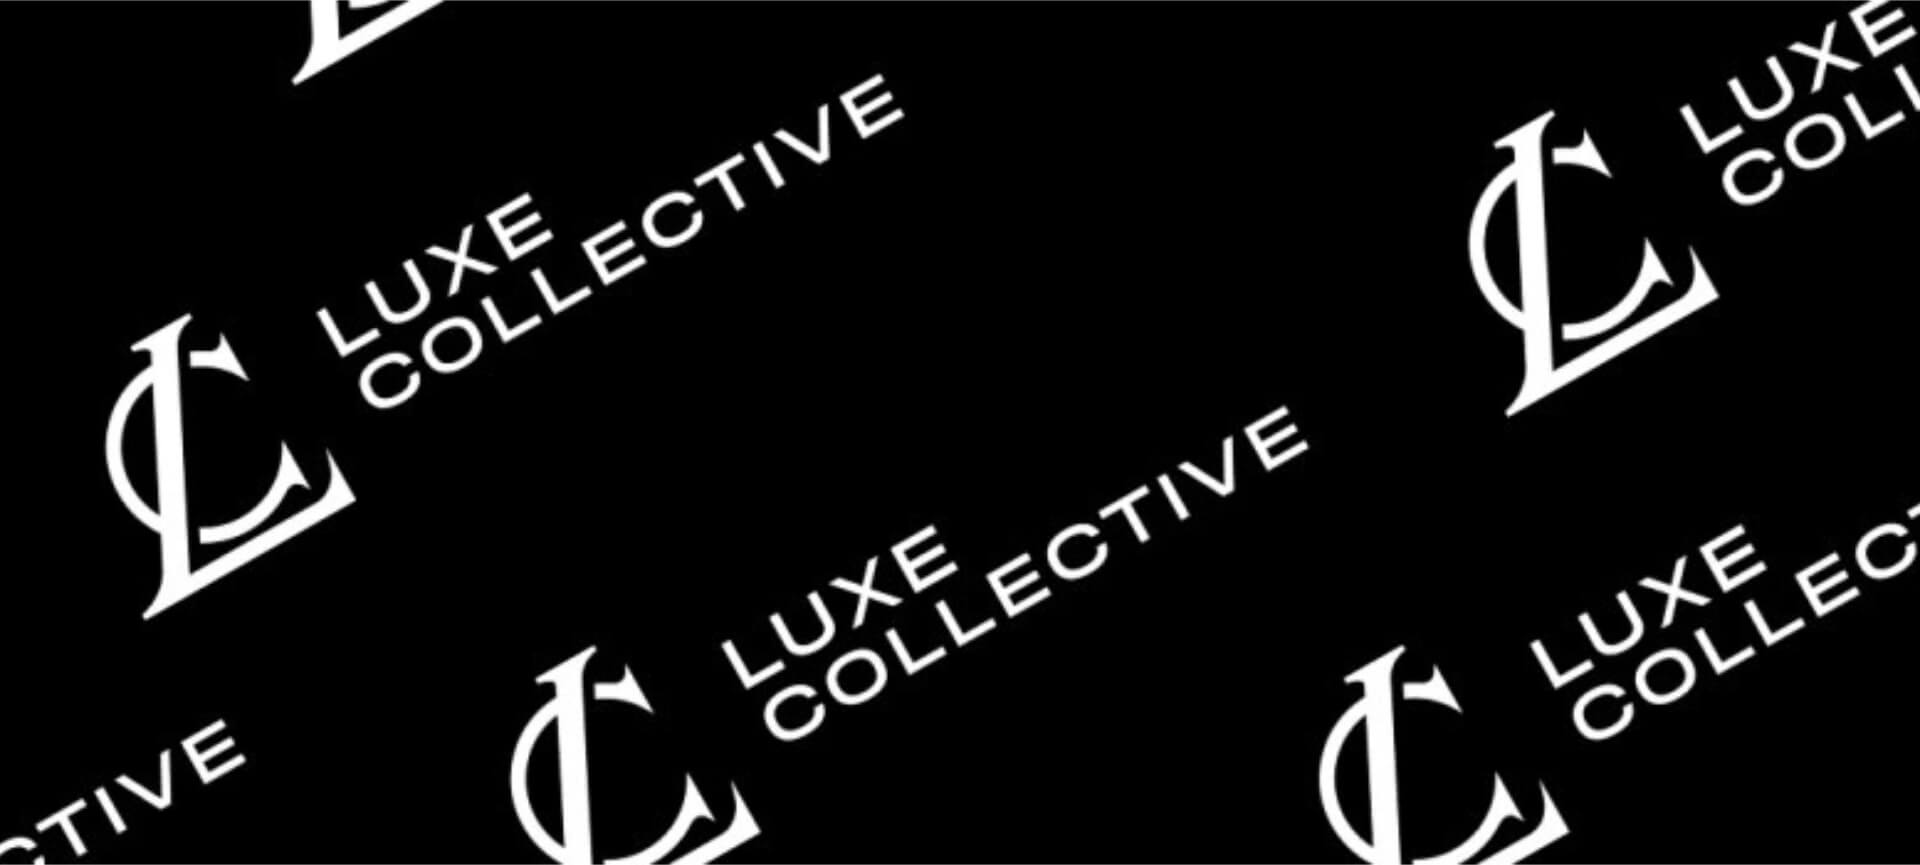 luxe collective logo